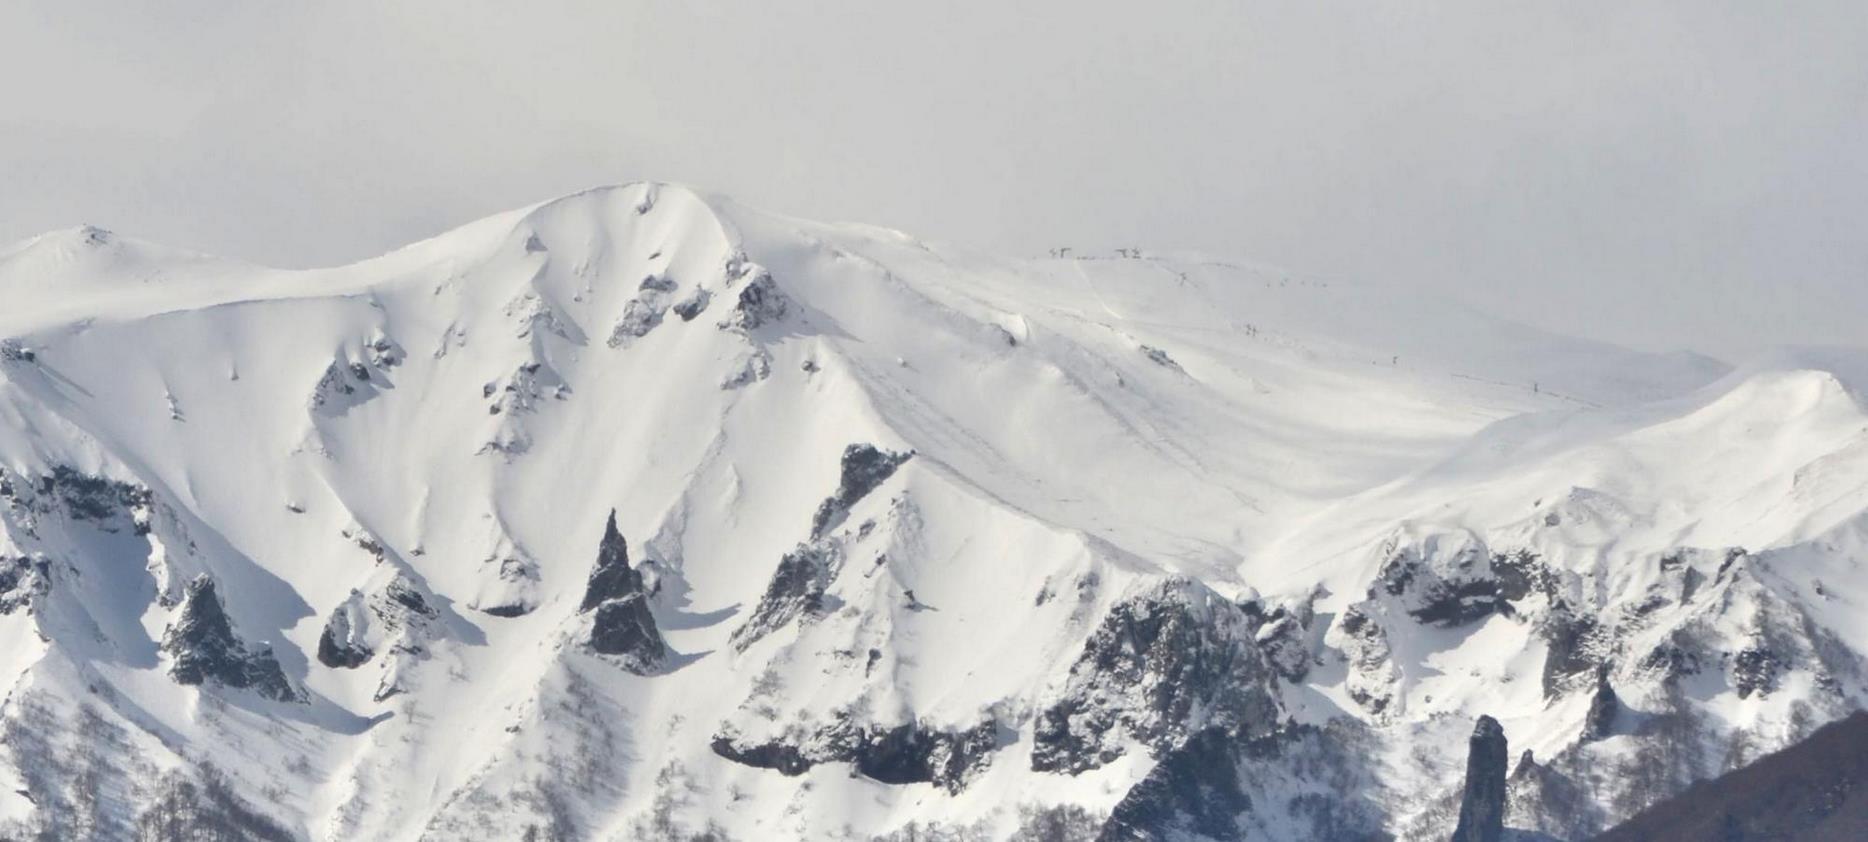 Super Besse - snowy summit